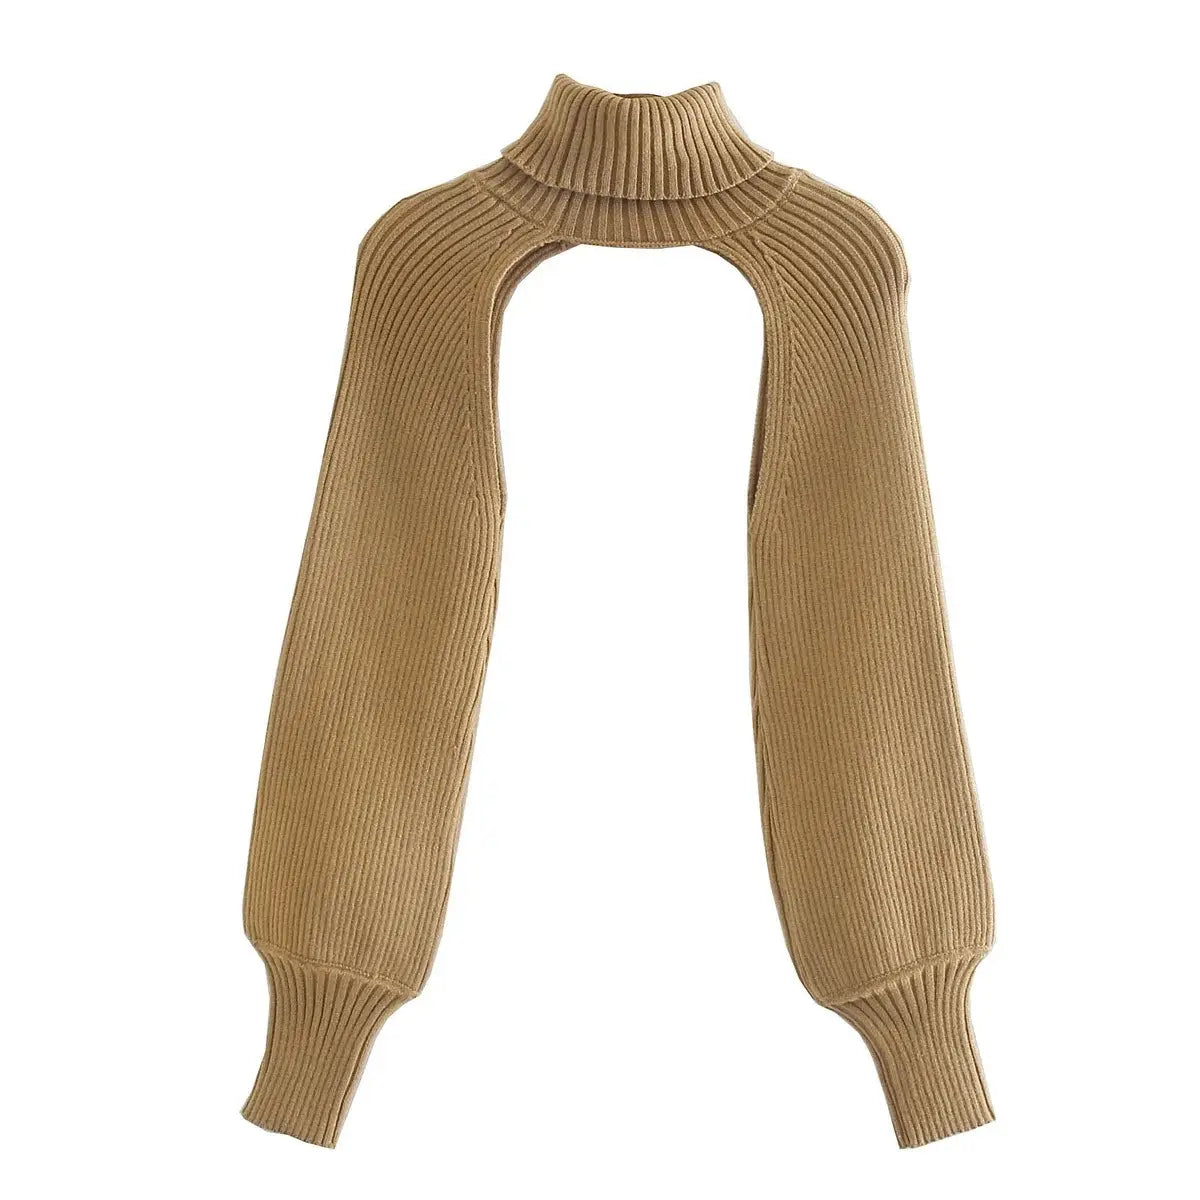 Lovemi - Retro Scheming Niche Design Knit Sweater Sleeves